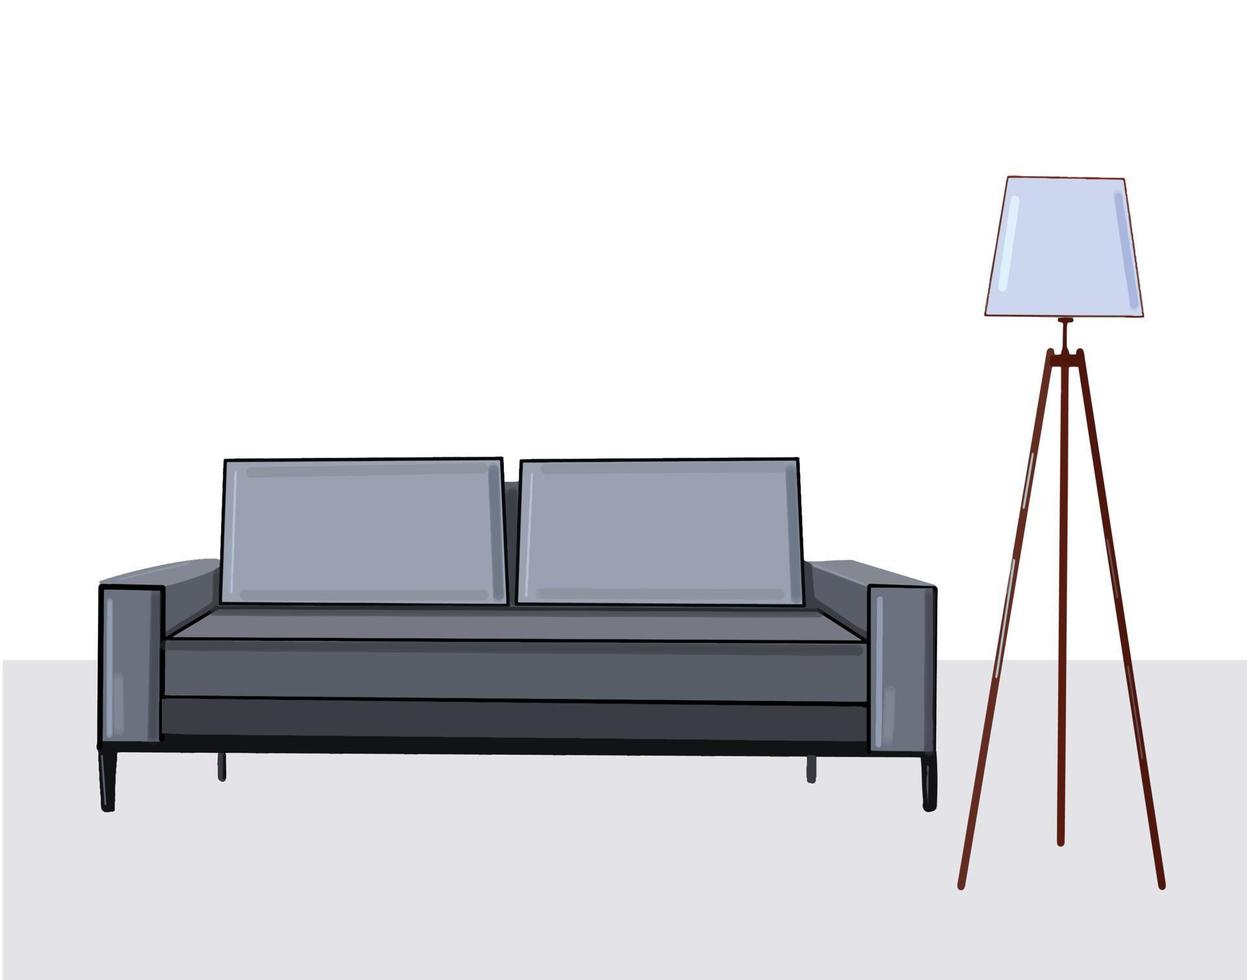 zimmer mit grauem sofa und stehlampe, moderne innenarchitektur-vektorillustration vektor